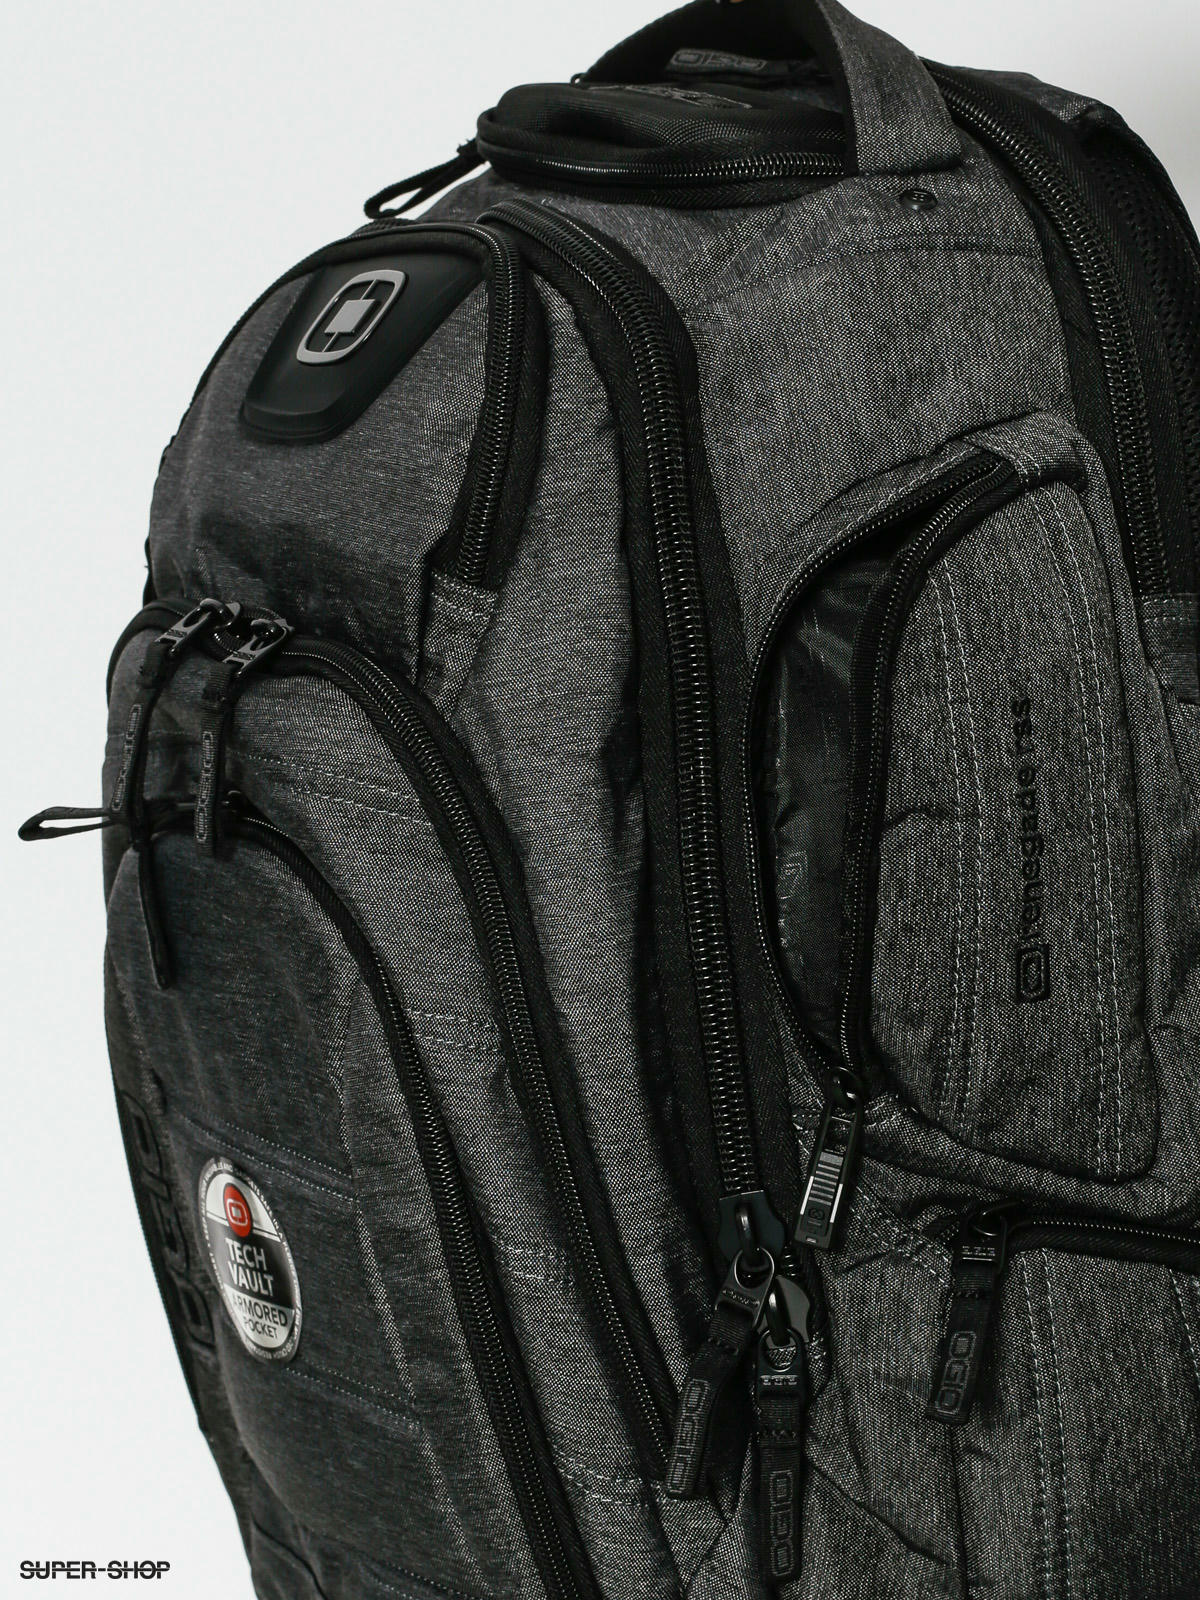 OGIO Black Stratagem Backpack